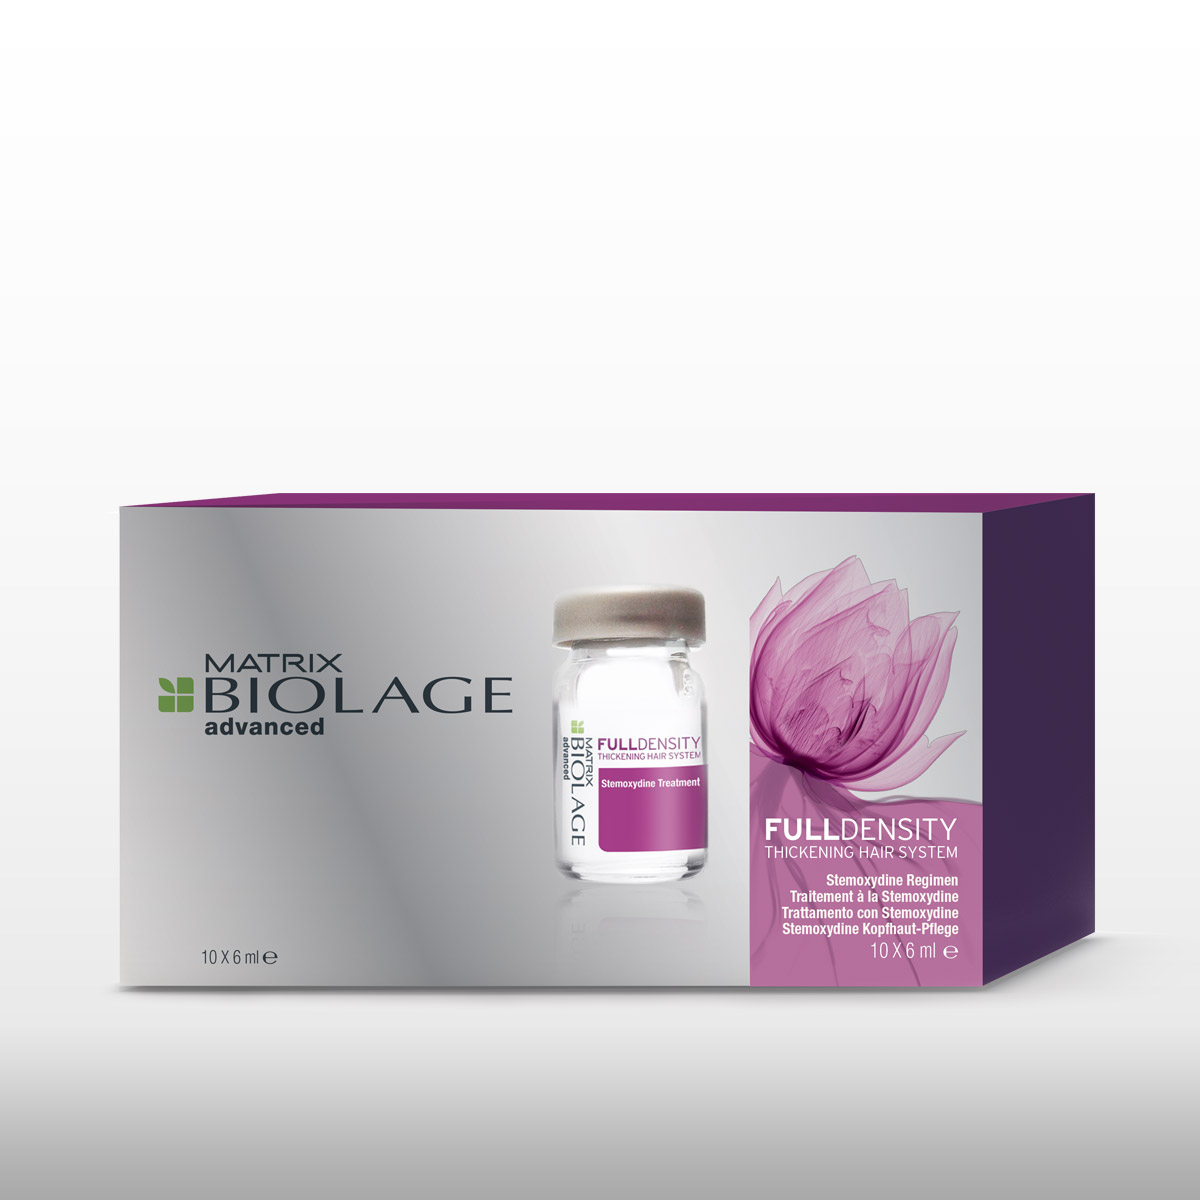 Ampulky Stemoxydine ako starostlivosť pre riedke vlasy z rady Fulldensity Biolage Advanced.